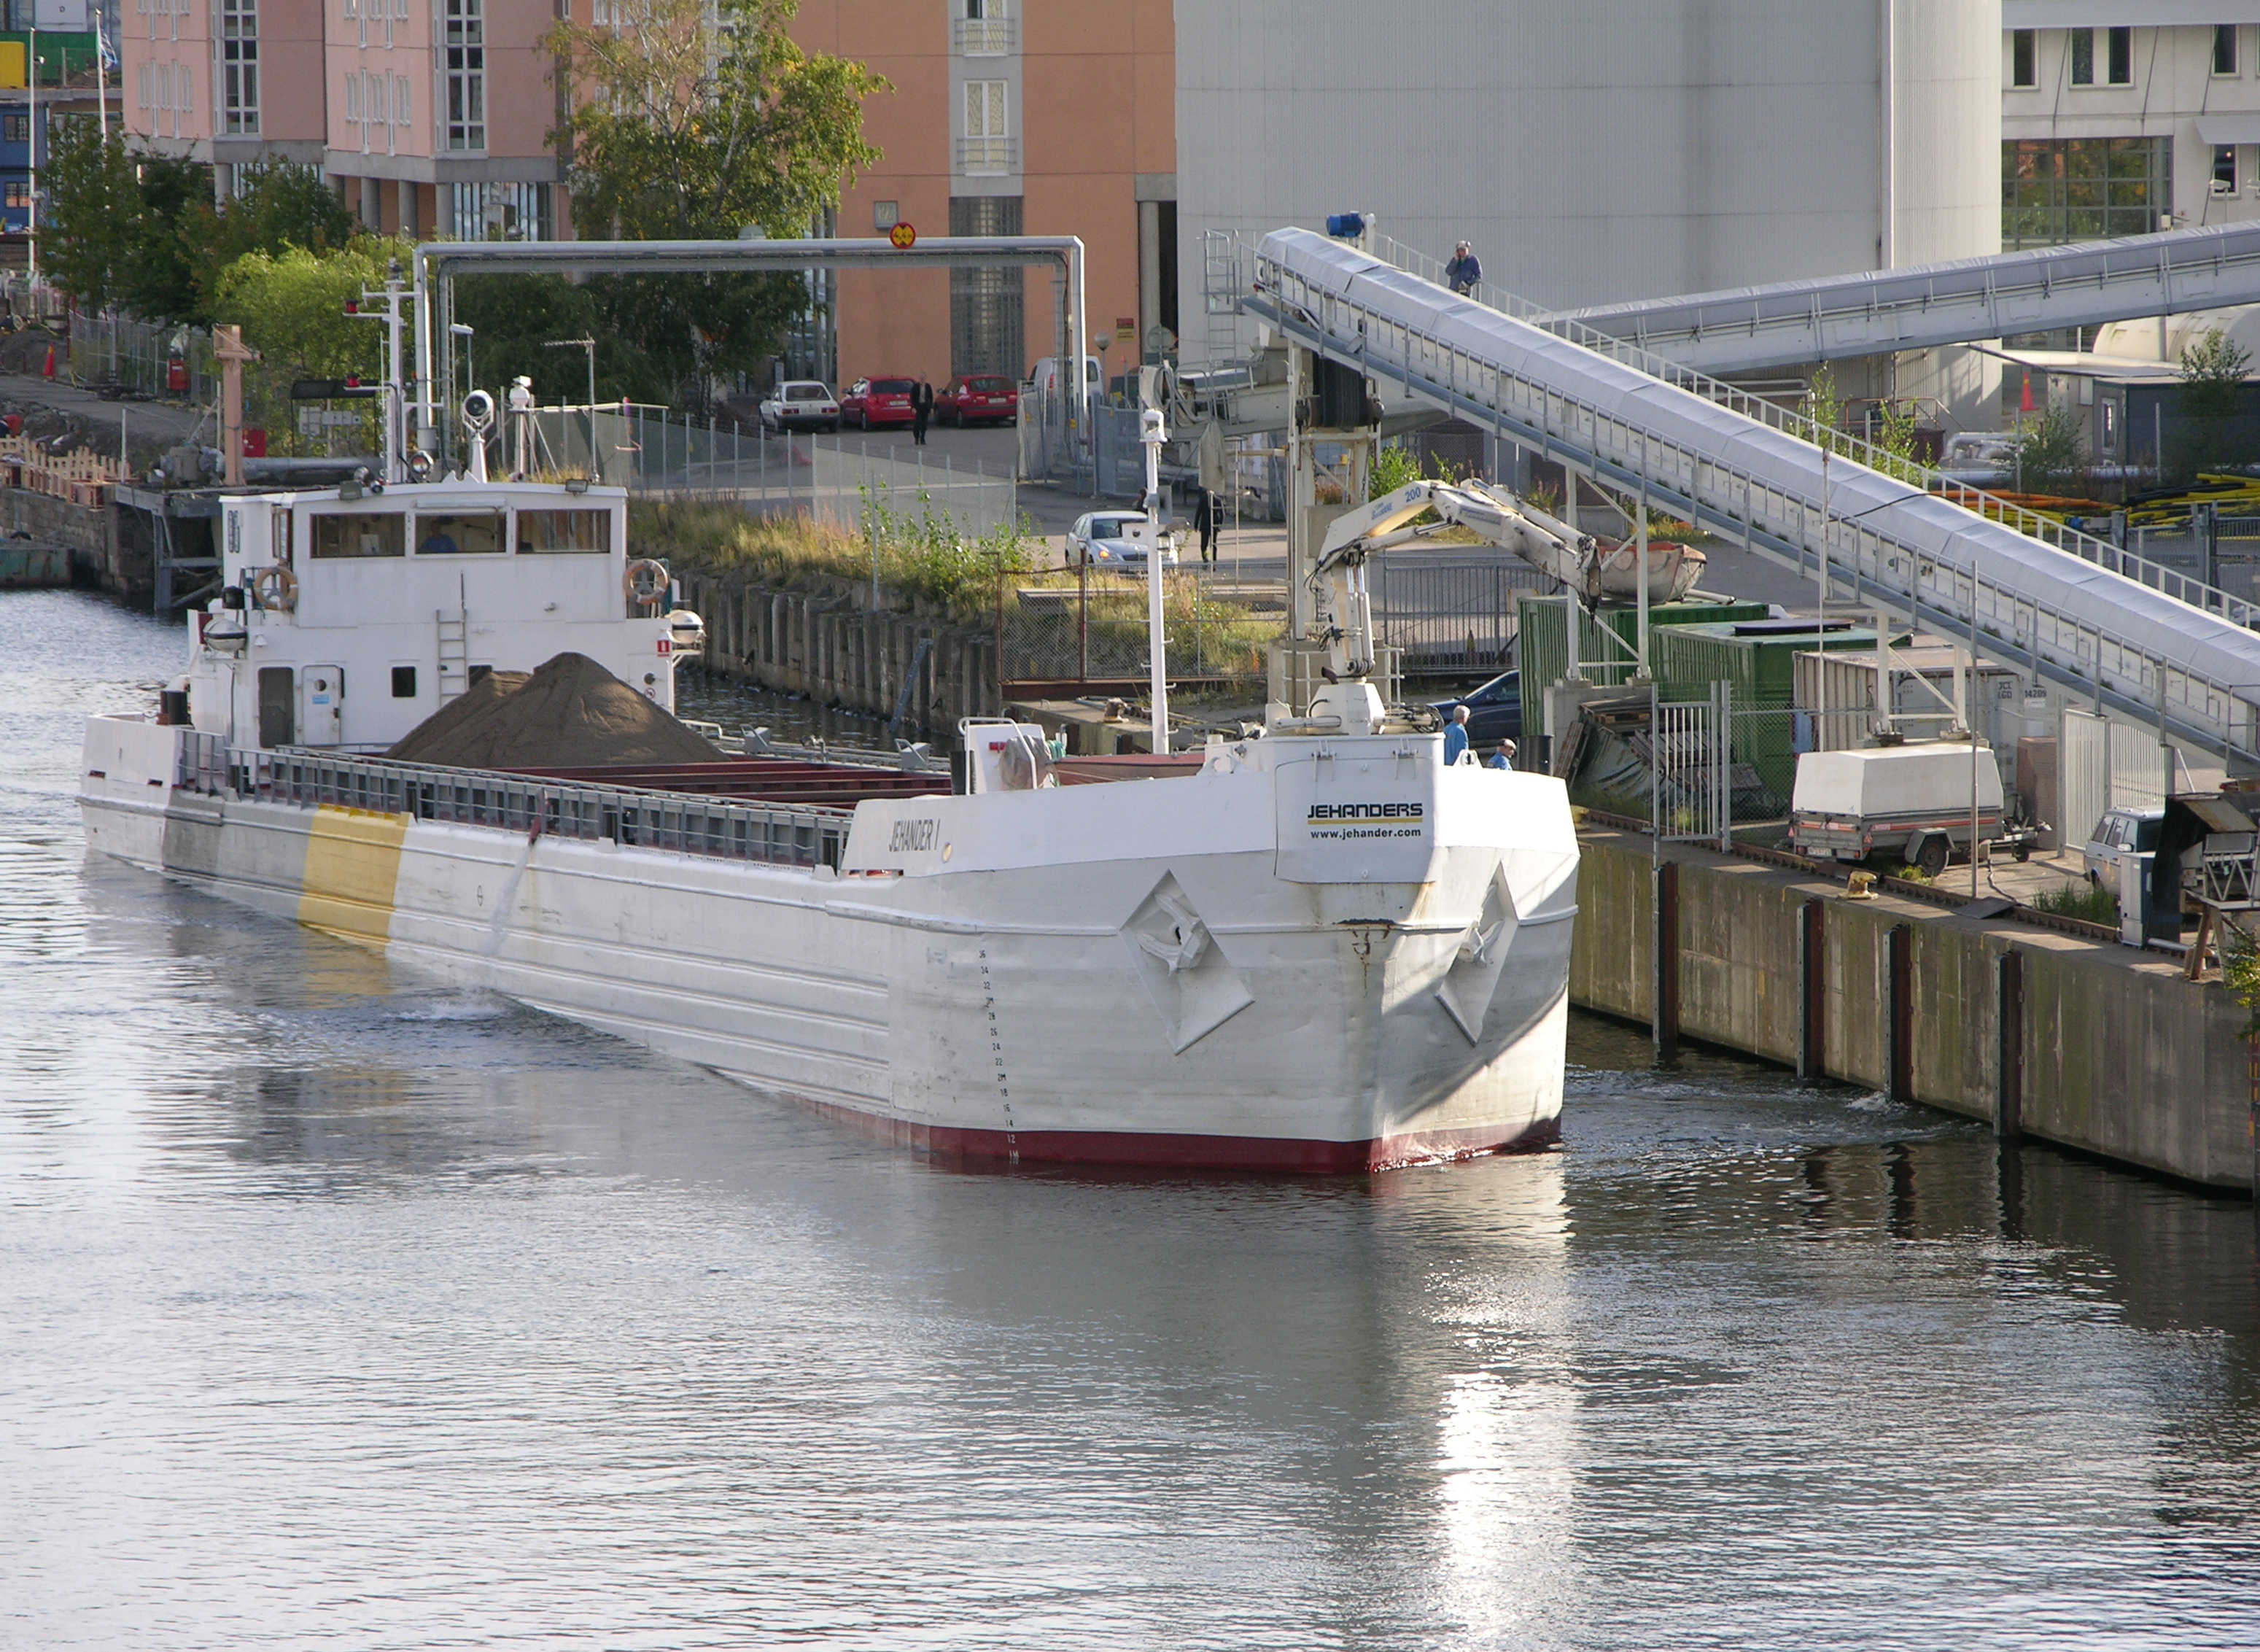 Fartyget Jehander 1 intill kaj i Hammarbykanalen för att lasta av till Betonginudstris betongfabrik. Jehander 1 fraktar ca 400 000 ton/år, och går på sträckan Ekerö, Södertälje - Stockholms hamn.